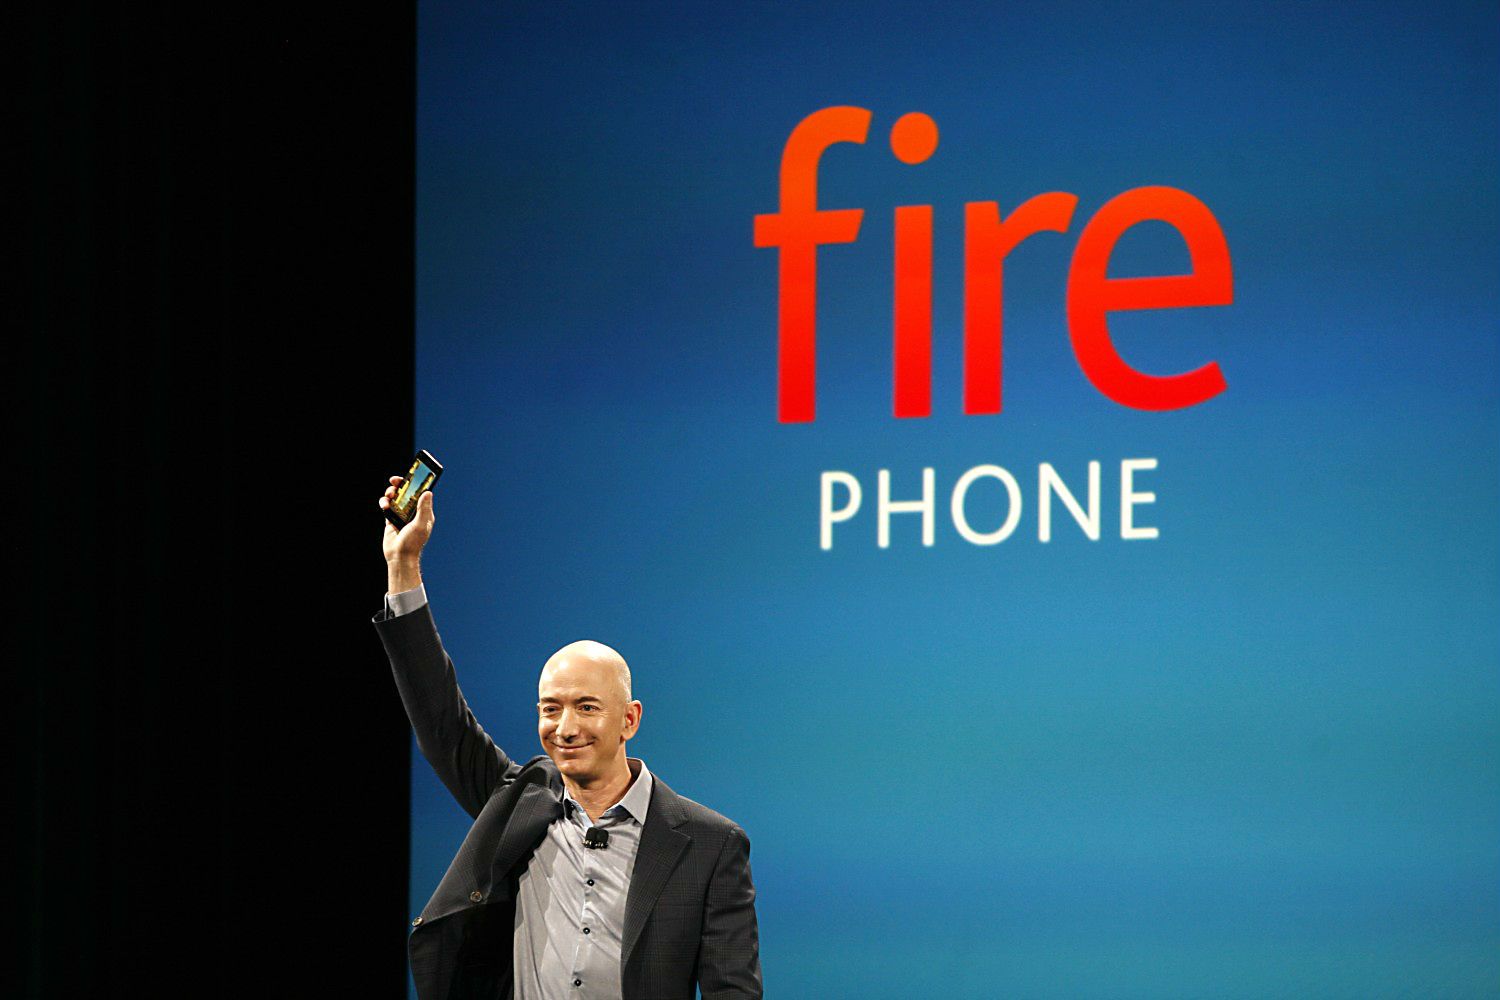 Amazon Fire Phone